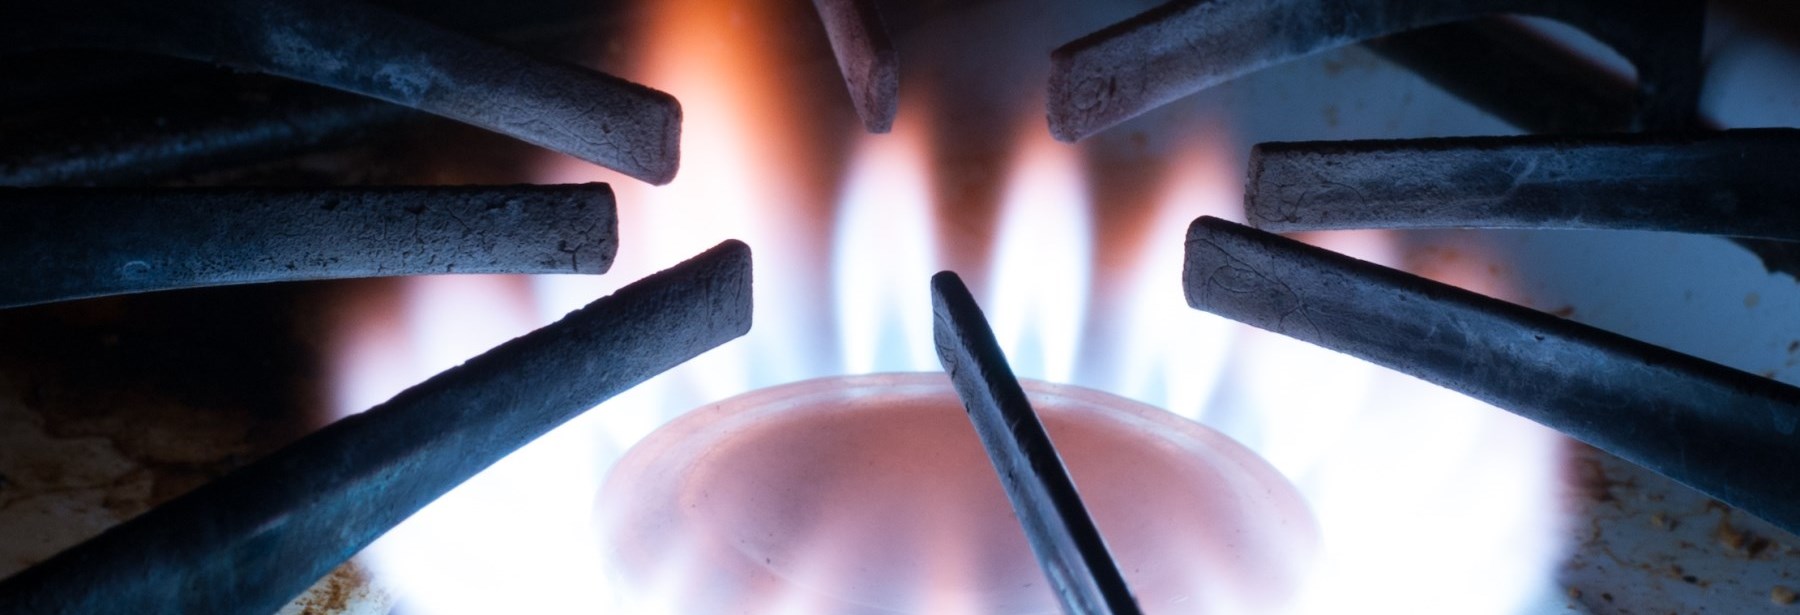 gas range stove top flame